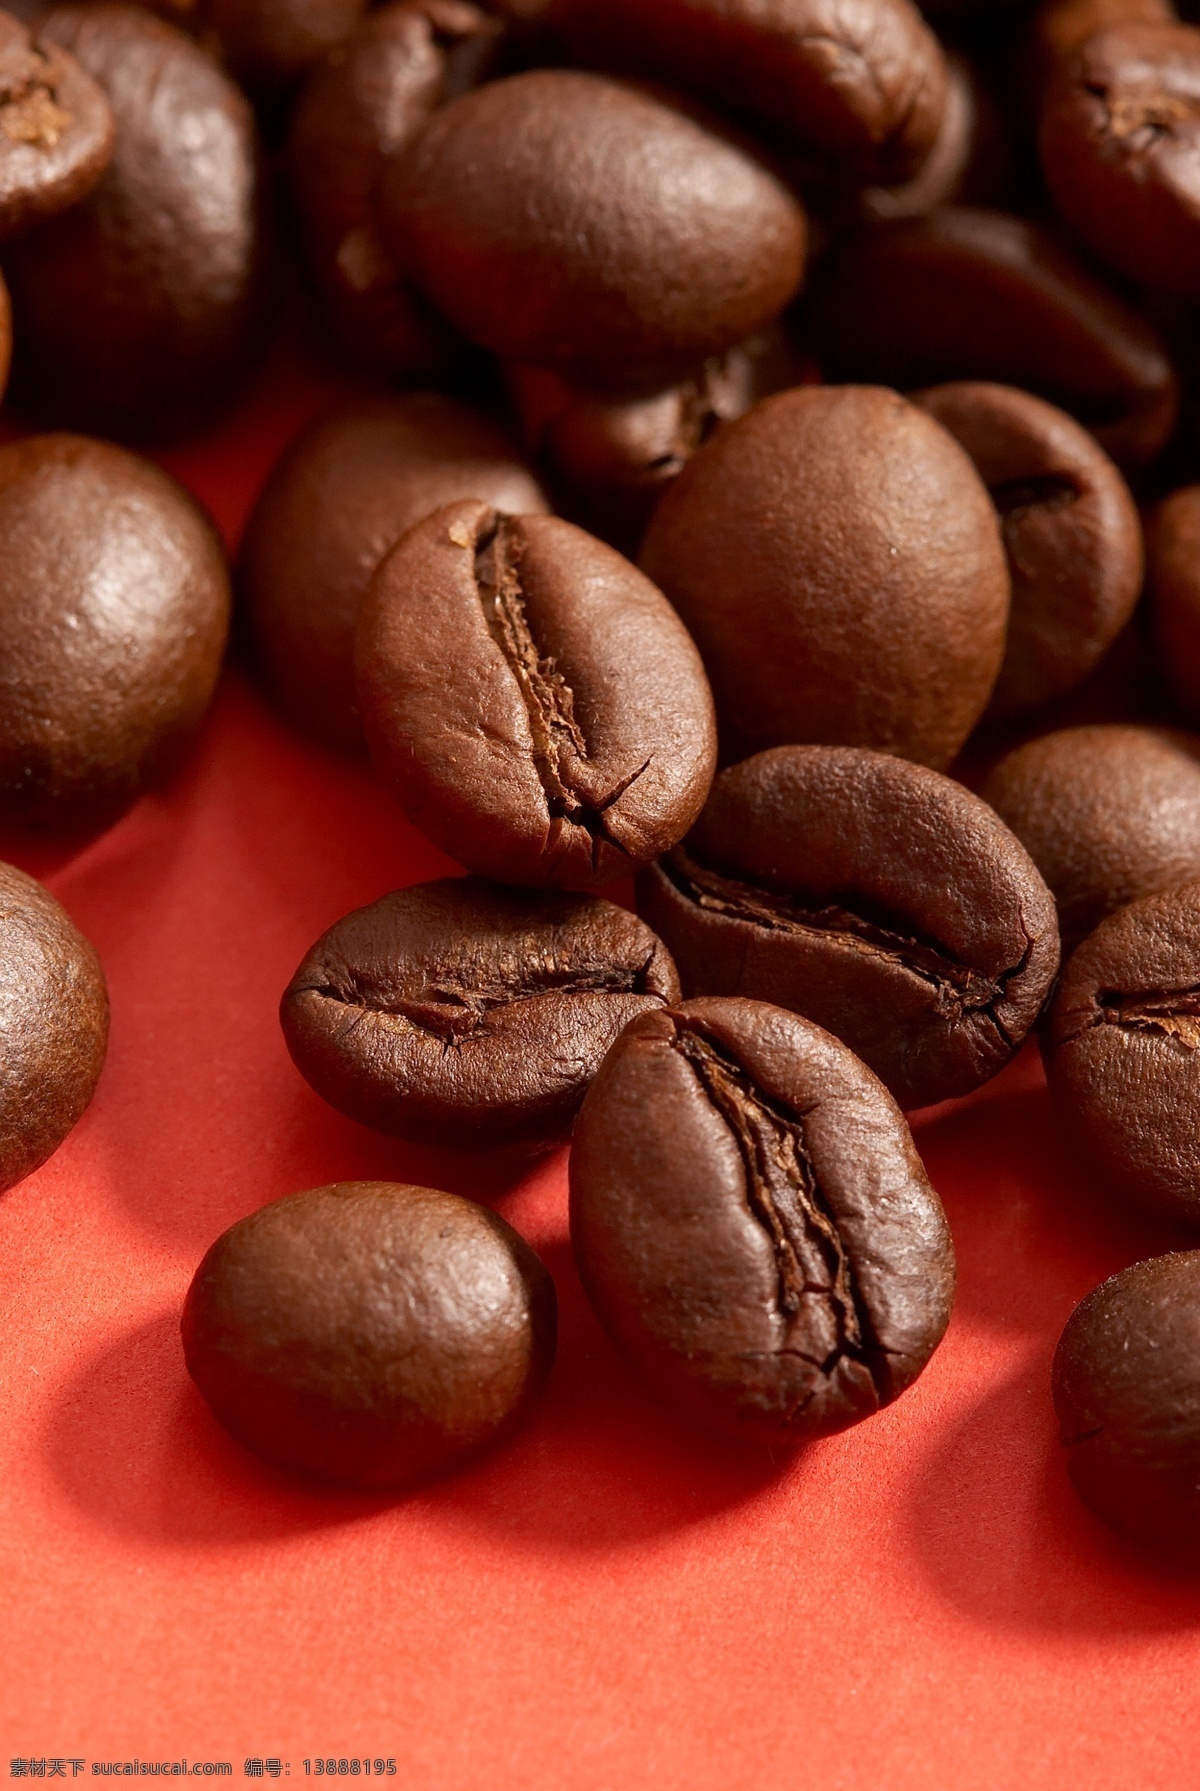 咖啡豆 背景 咖啡 可可豆 餐饮 背景图案 底纹背景 咖啡图片 餐饮美食